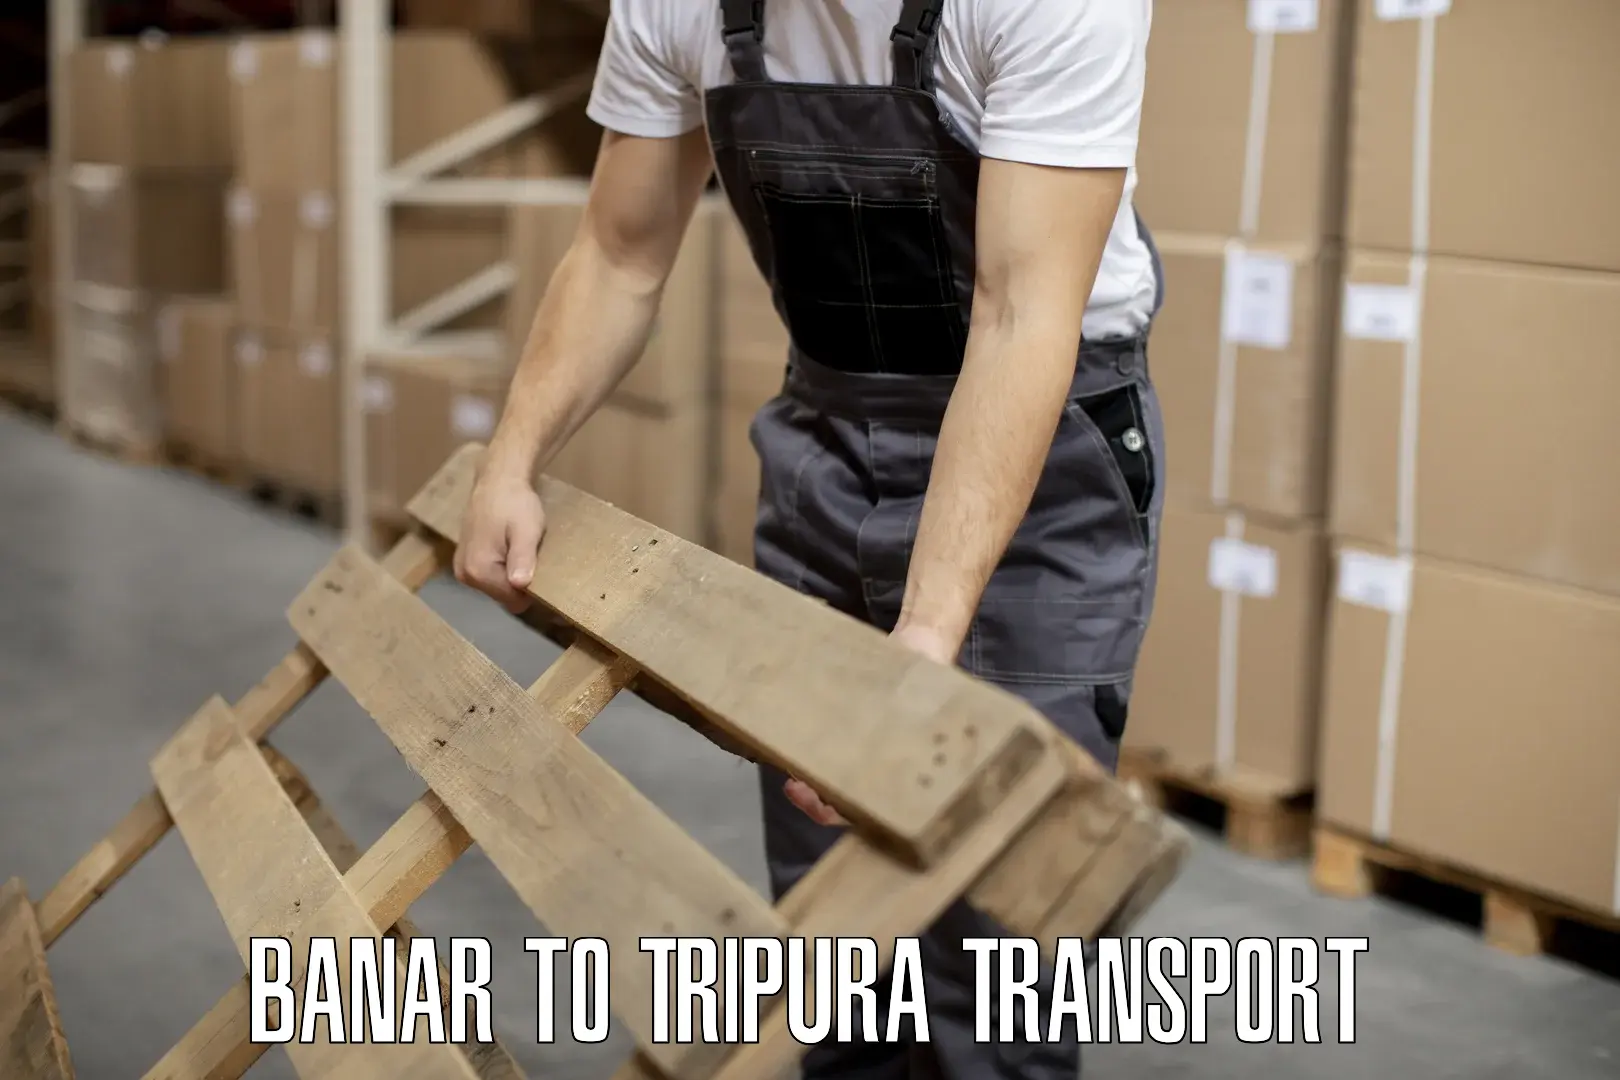 Furniture transport service Banar to Amarpur